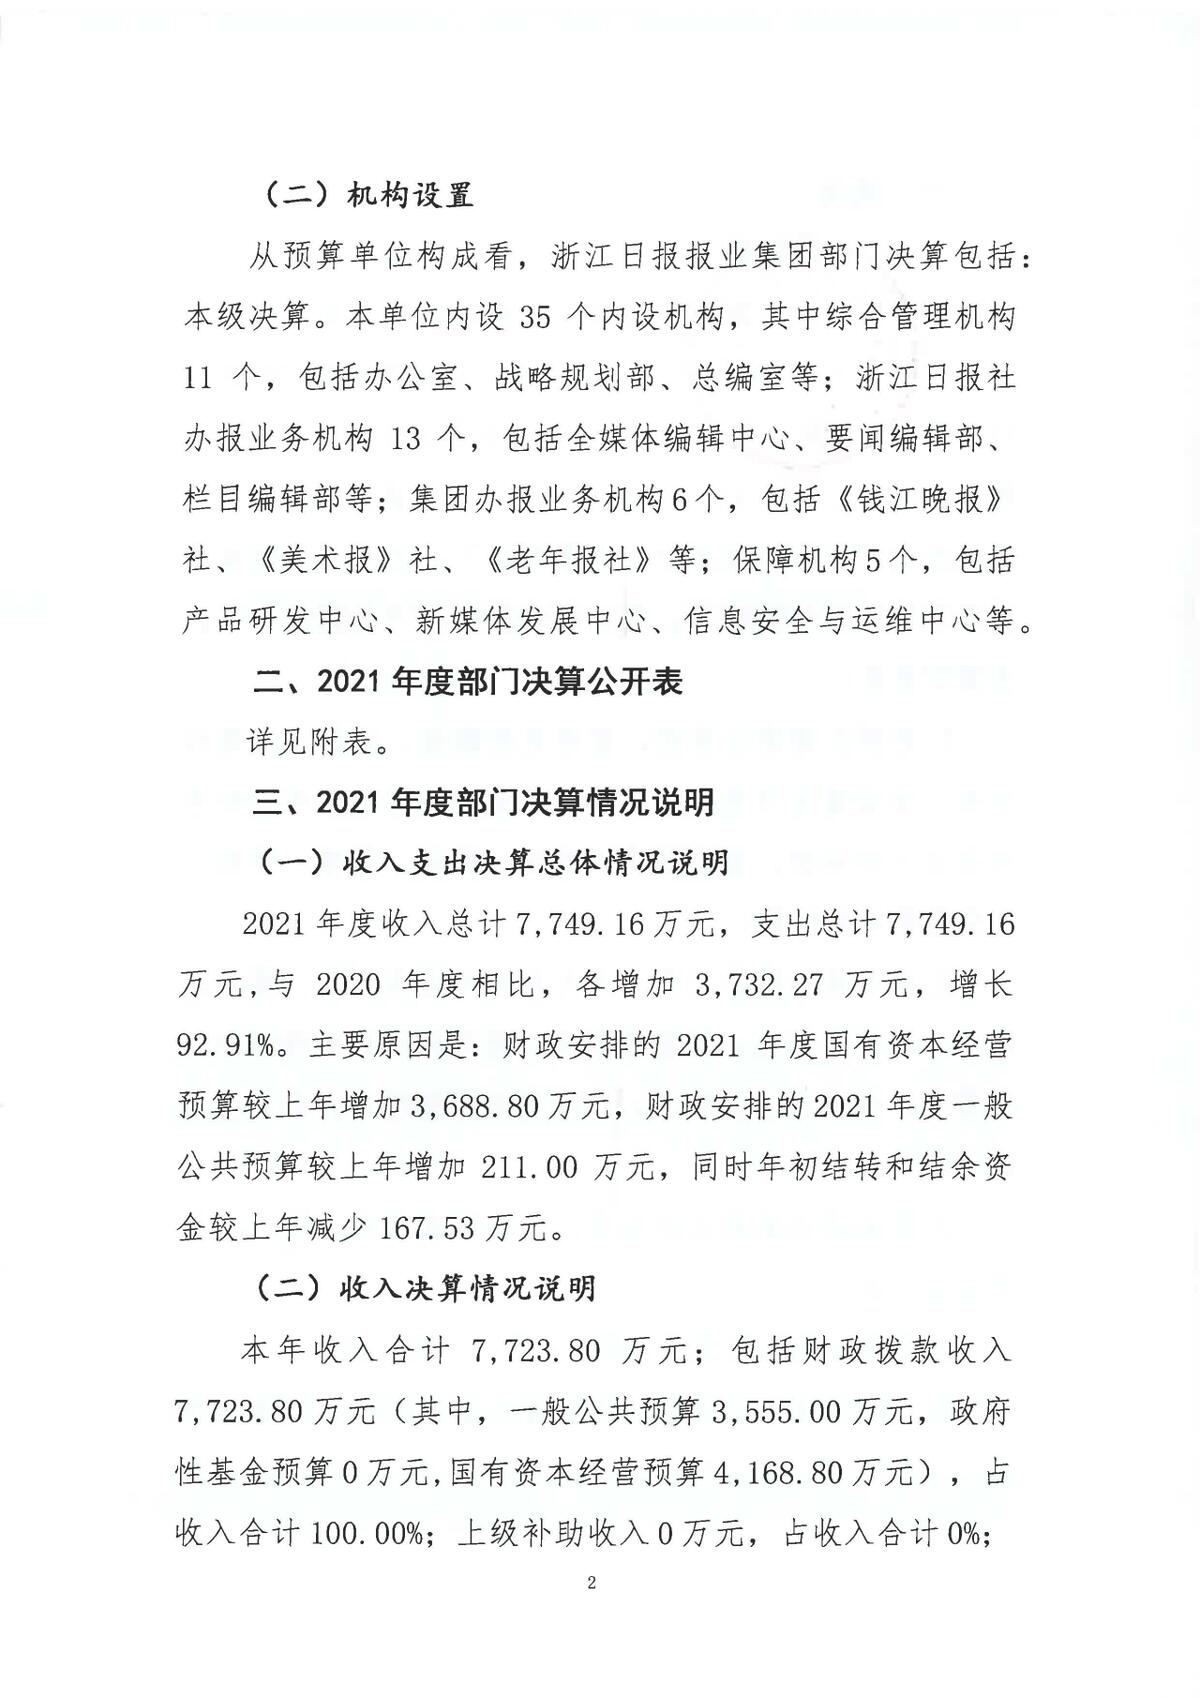 浙江日报报业集团2021年度部门决算_页面_04.jpg